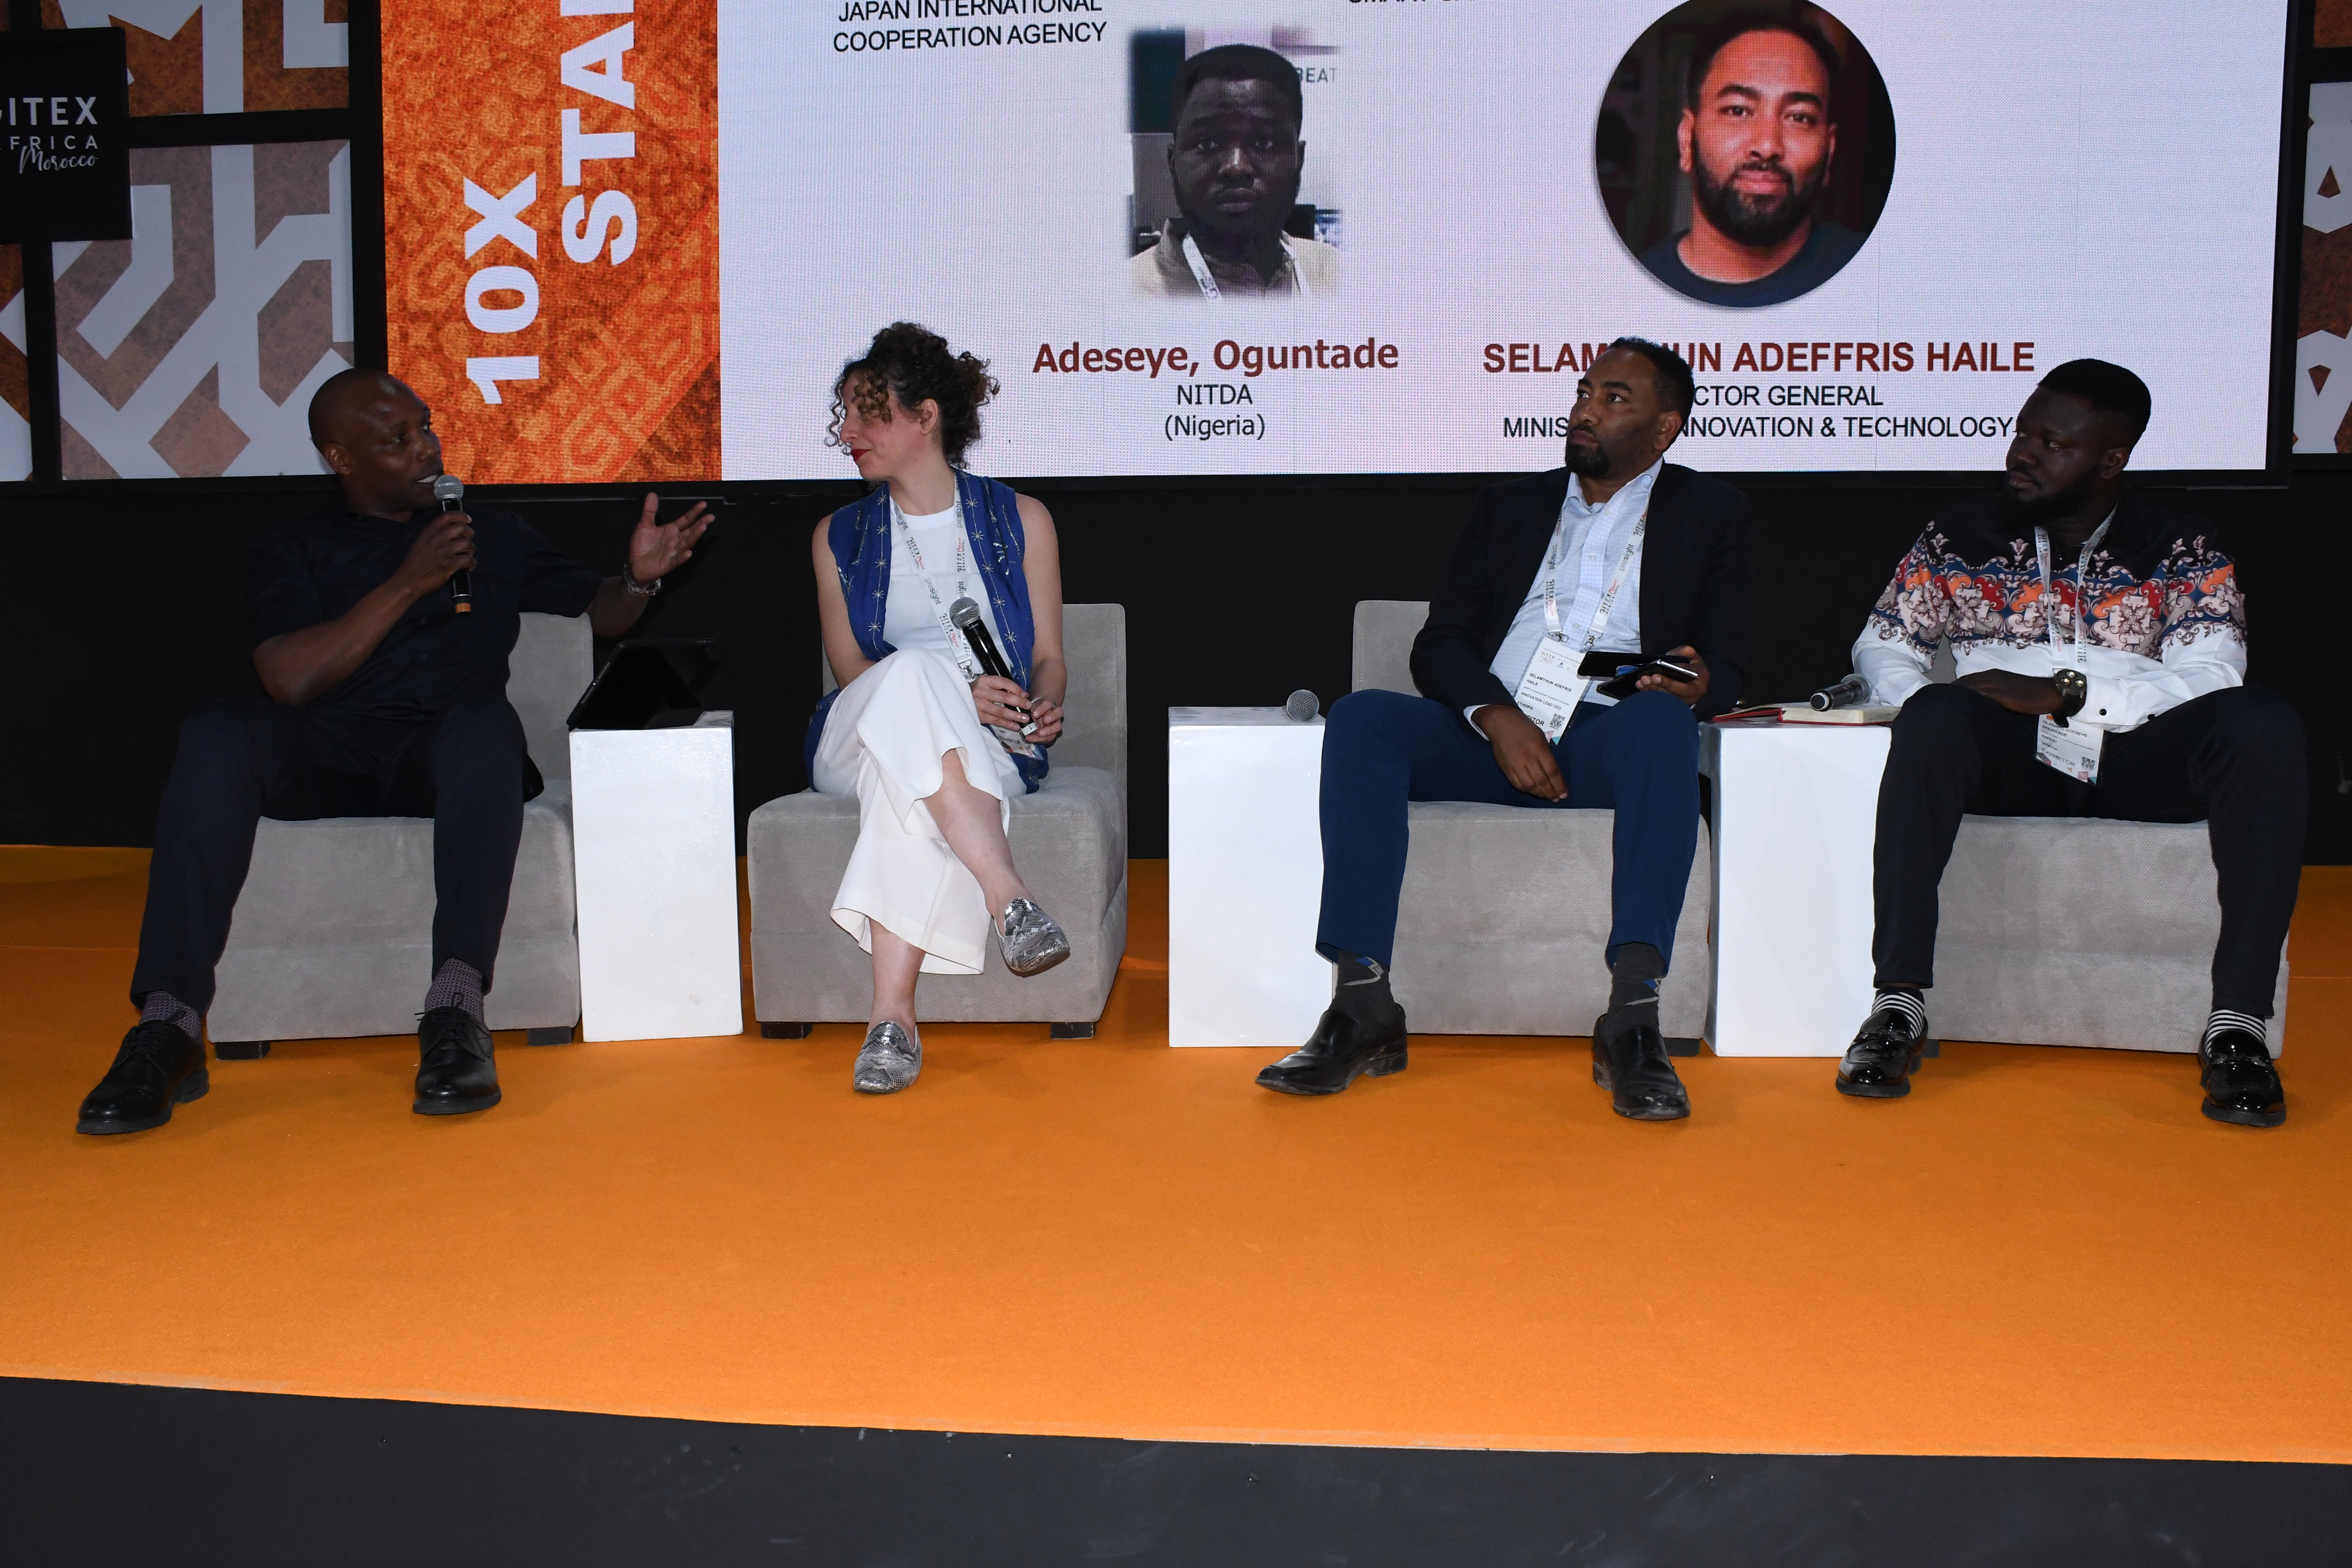 GITEX Africa: l'AUDA-NEPAD, en collaboration avec la JICA, vise à renforcer l'expansion internationale des startups africaines et Startup Act